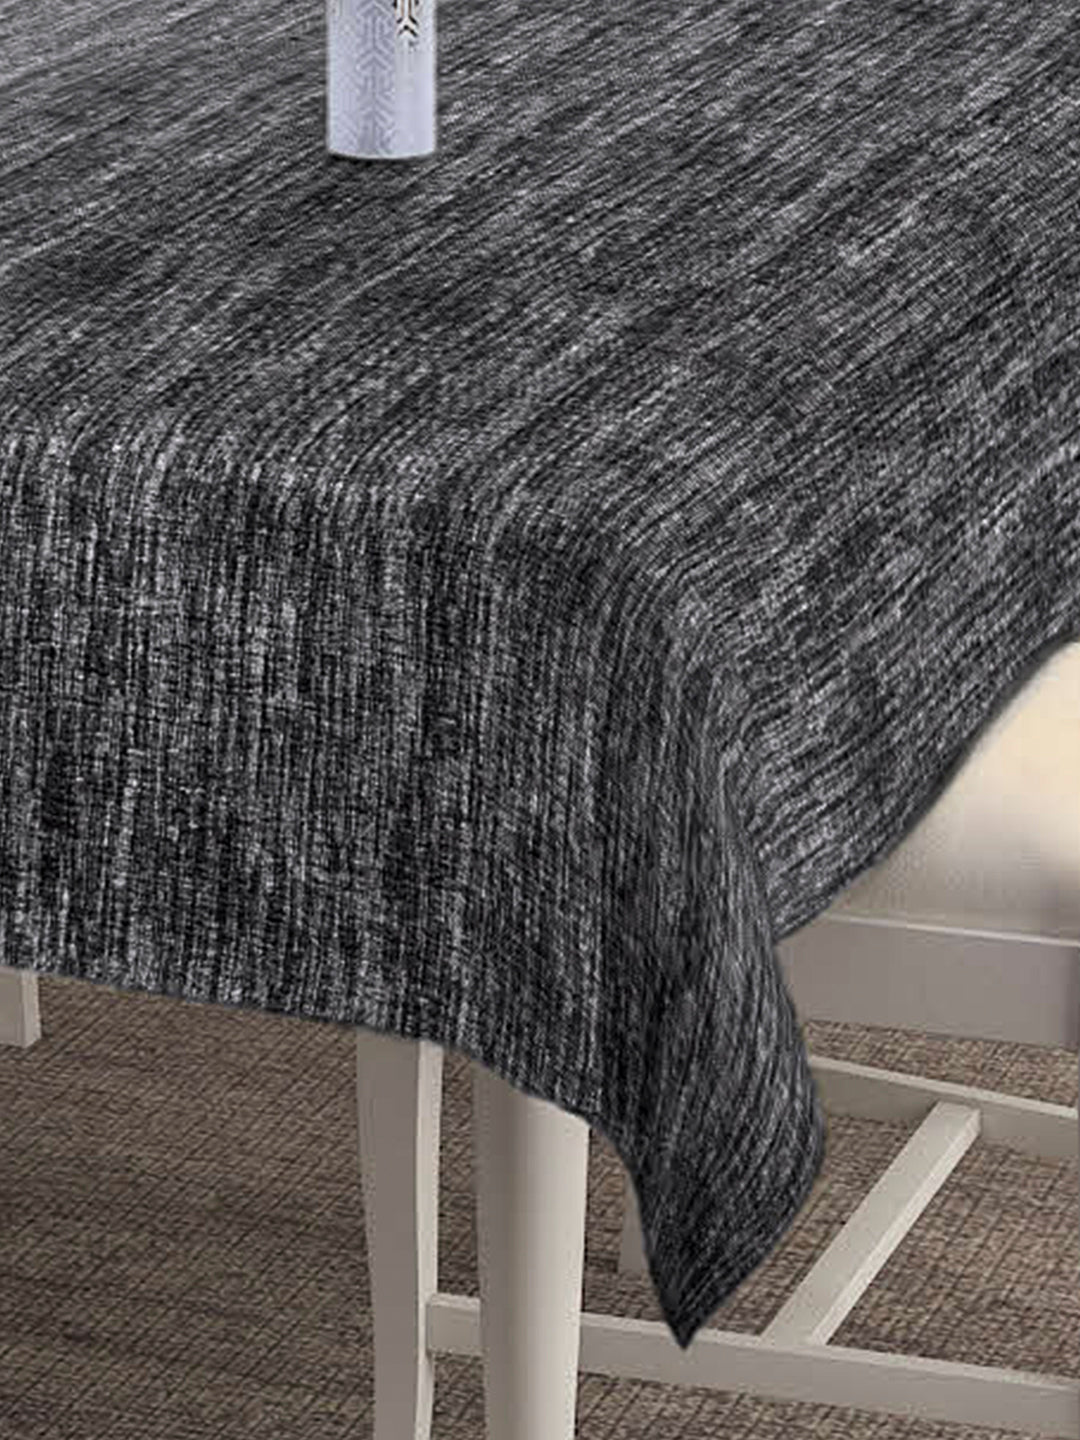 Klotthe Black Woven Design 6 Seater Rectangular Table Cover